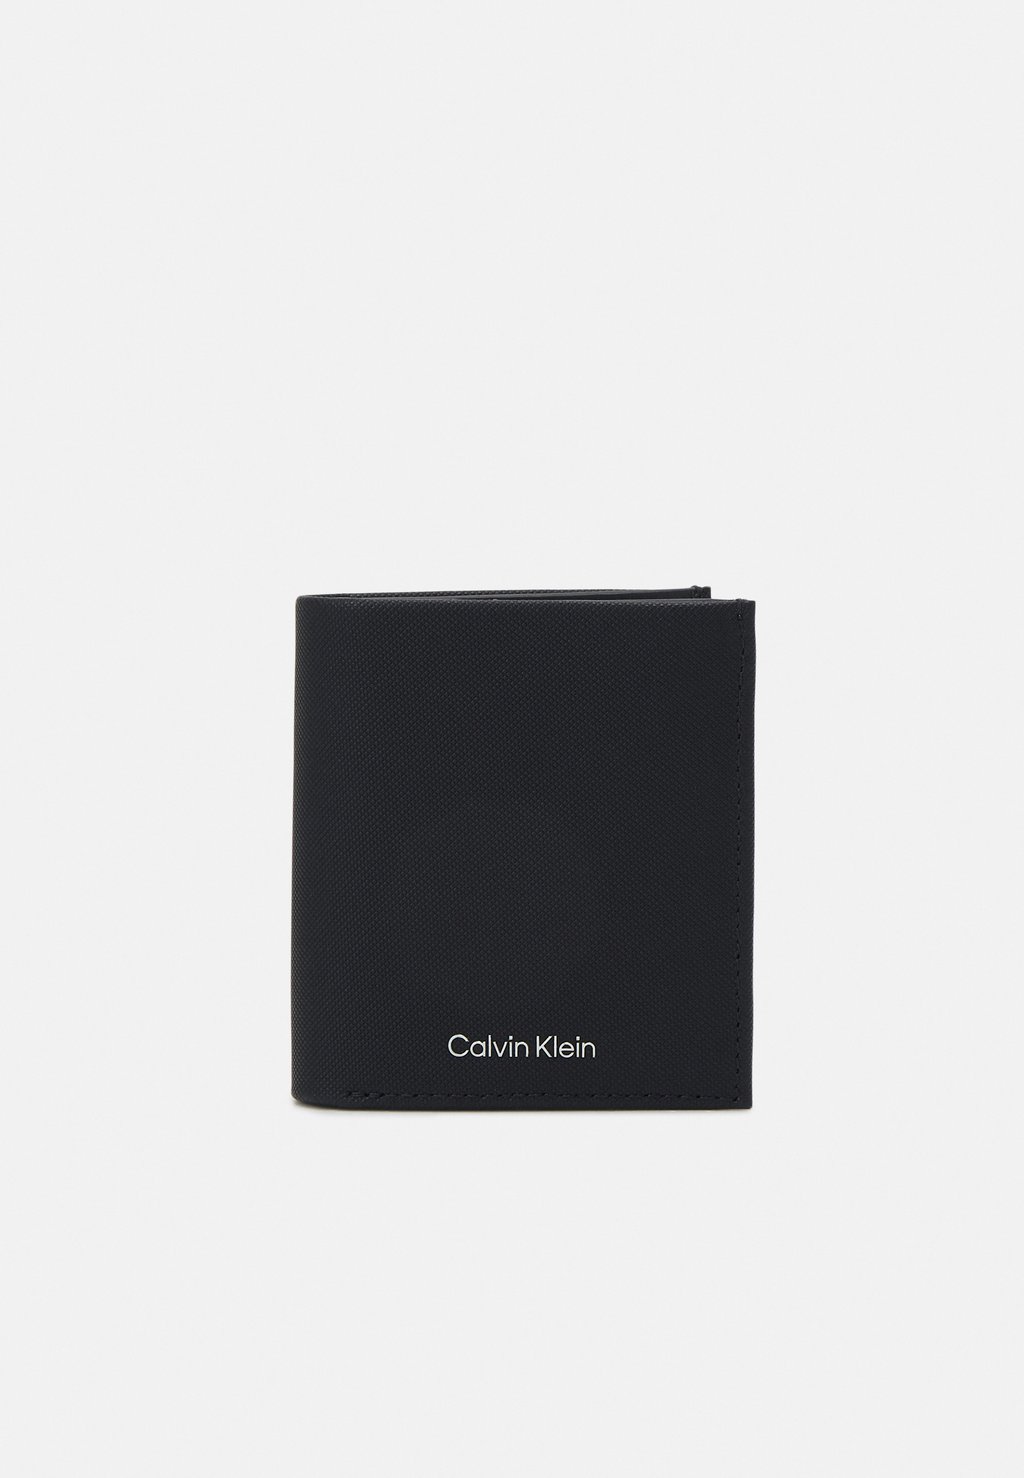 Кошелек MUST TRIFOLD COIN Calvin Klein, цвет black кошелек must small trifold mono calvin klein черный